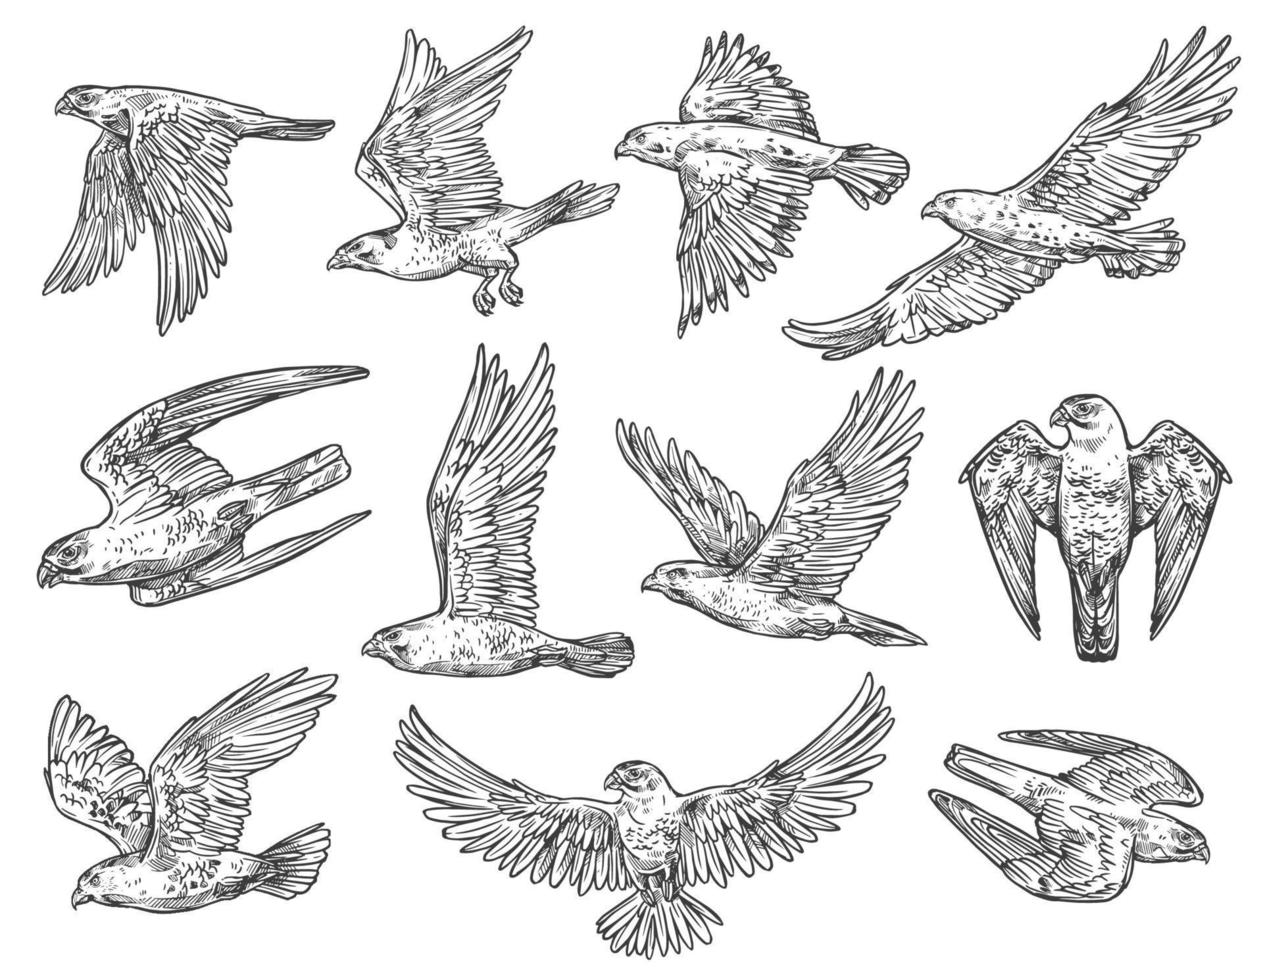 Birds of prey sketches. Eagle, falcon and hawk vector